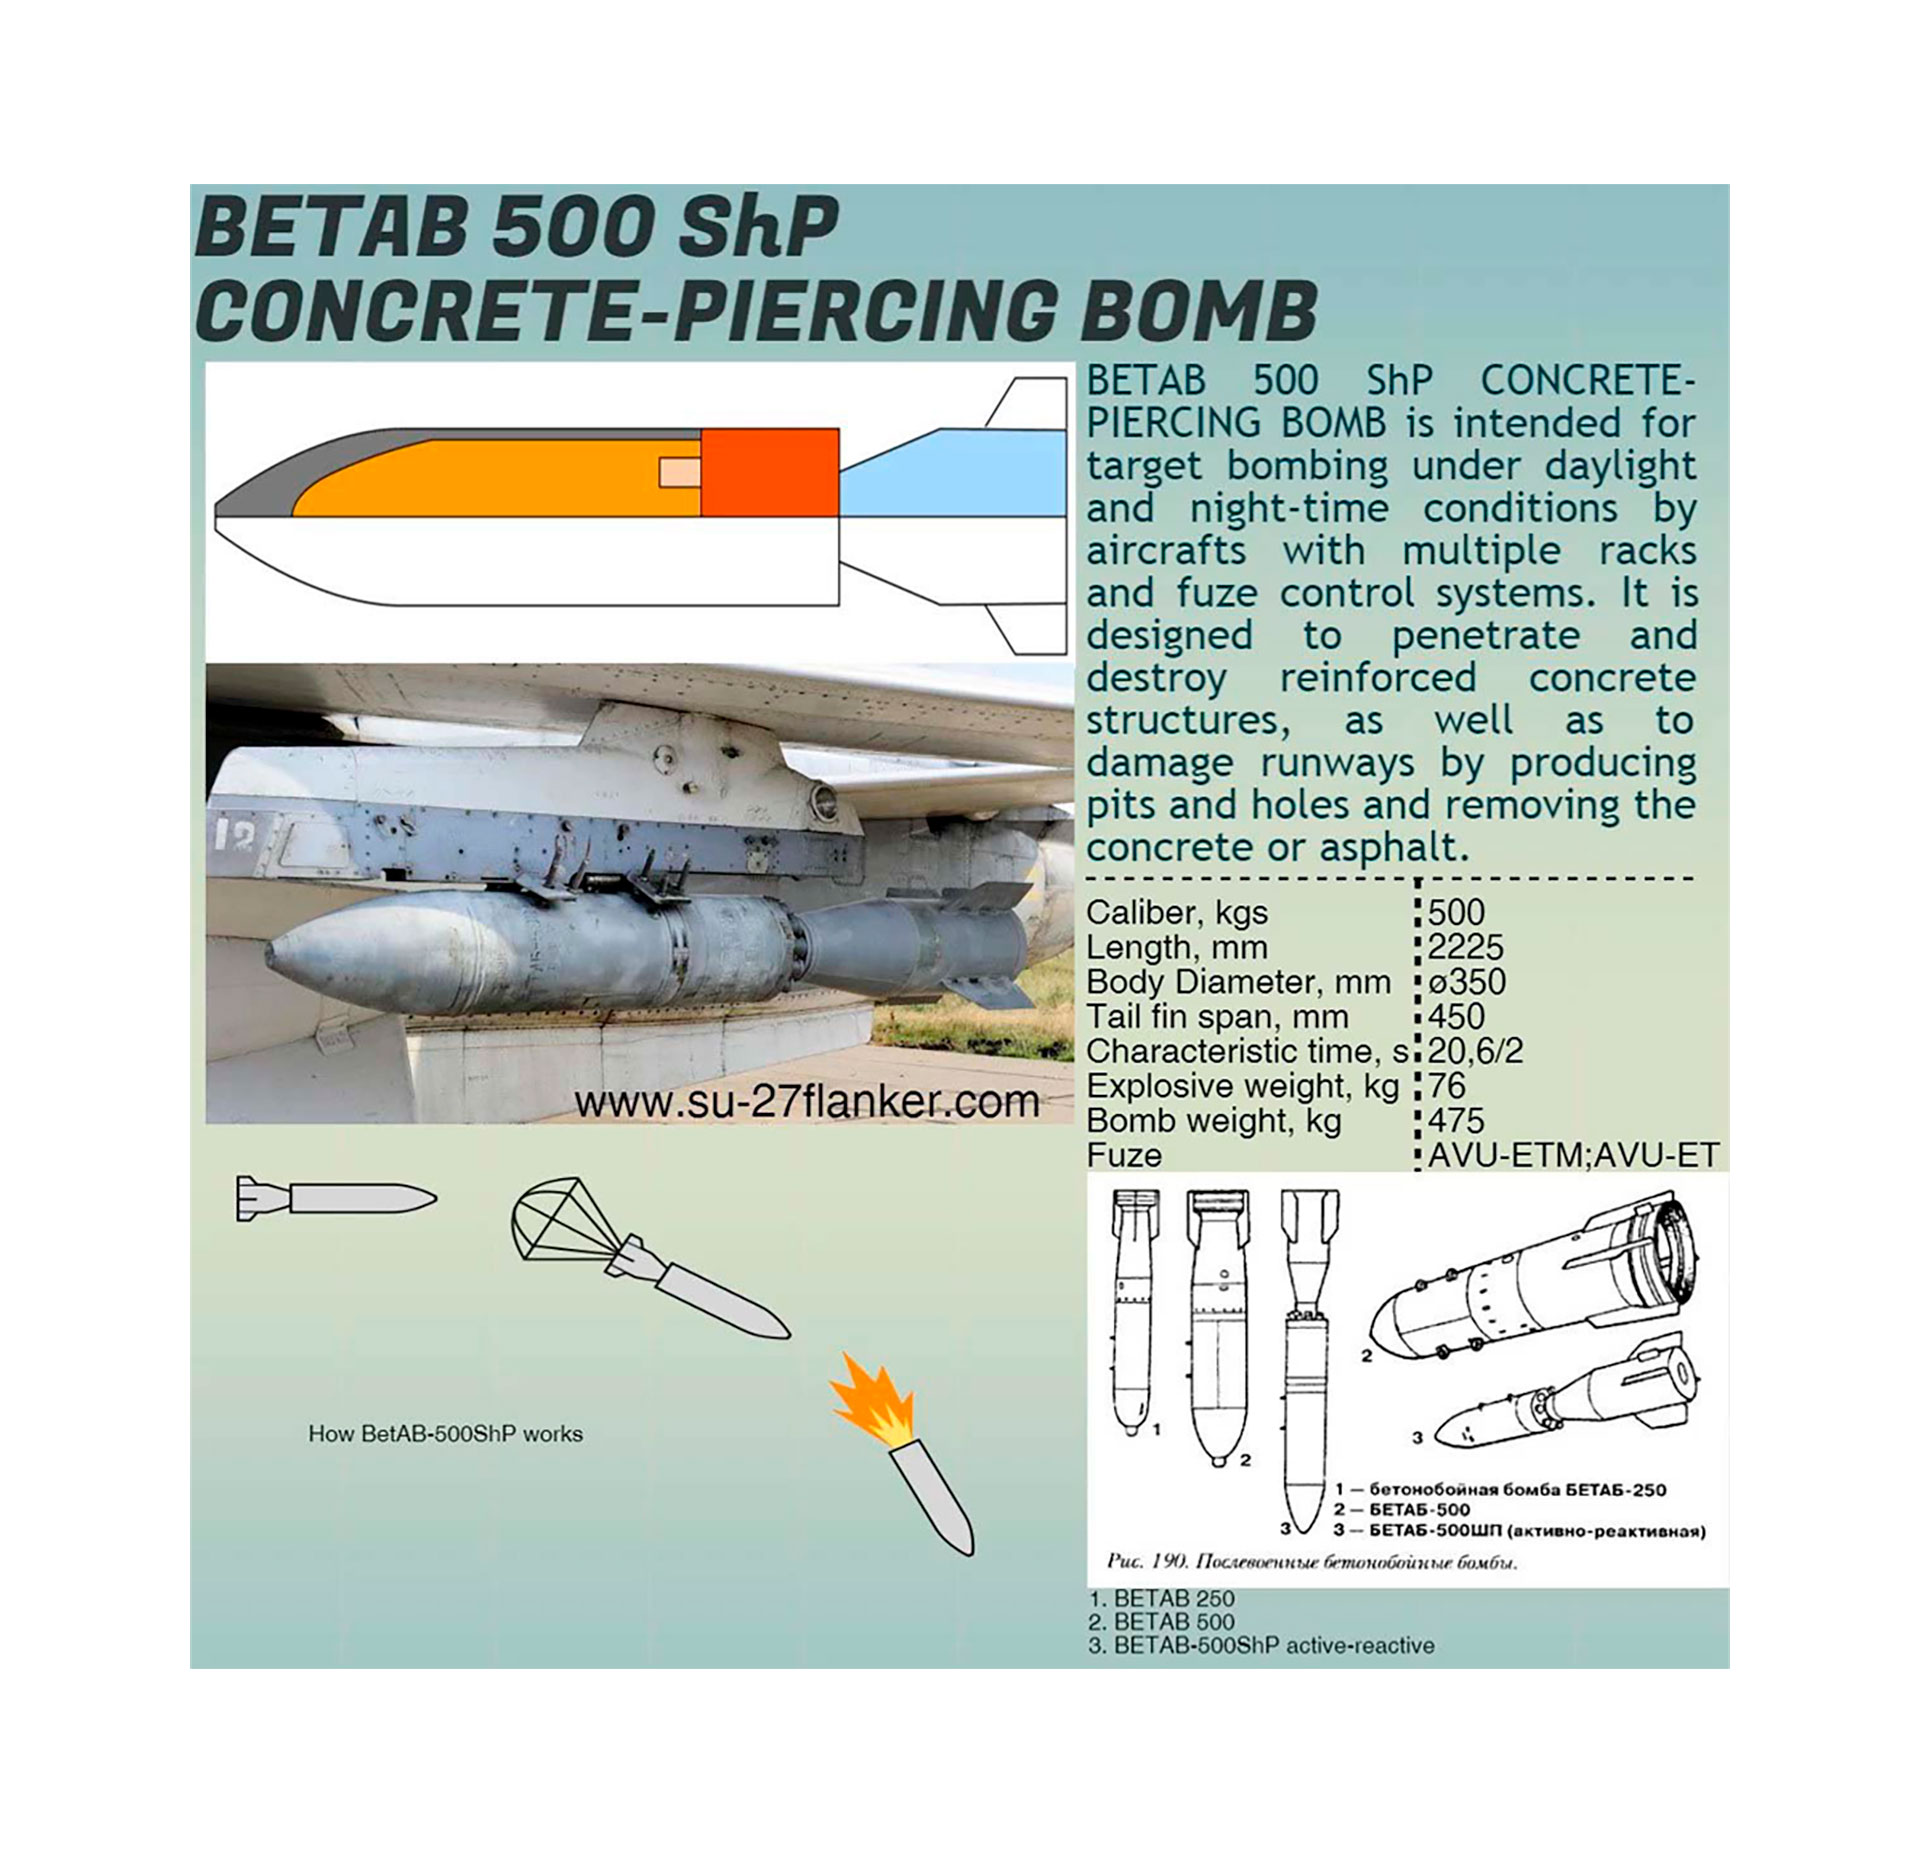 Las características de la “BETAB-500 ShP” (Kenan Rahmani)